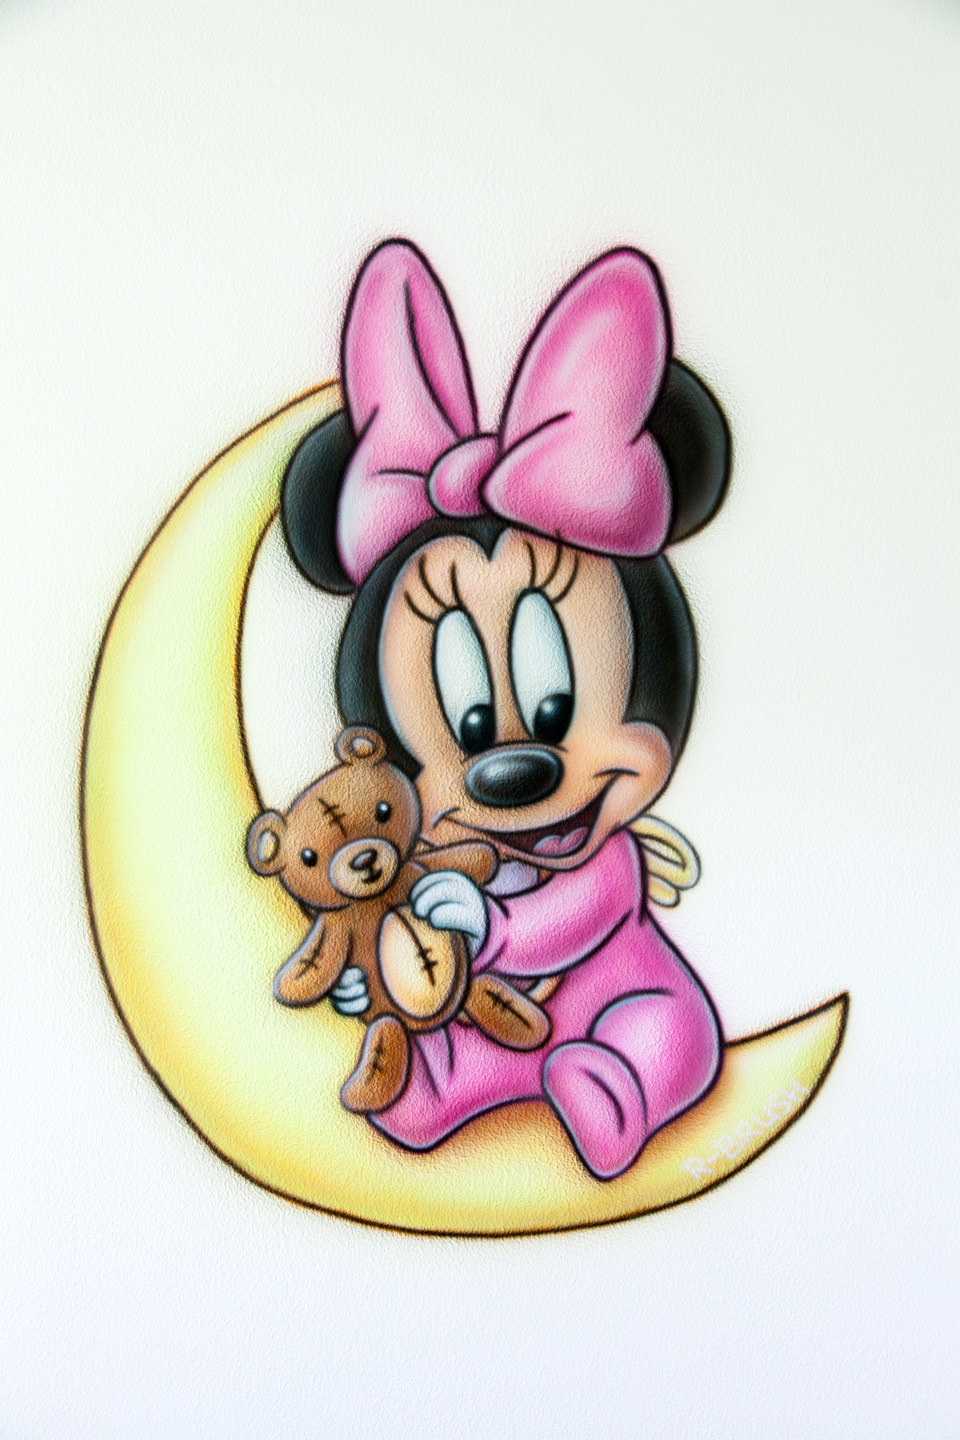 Babykamer Mini mouse airbrush muurschildering kinderkamer